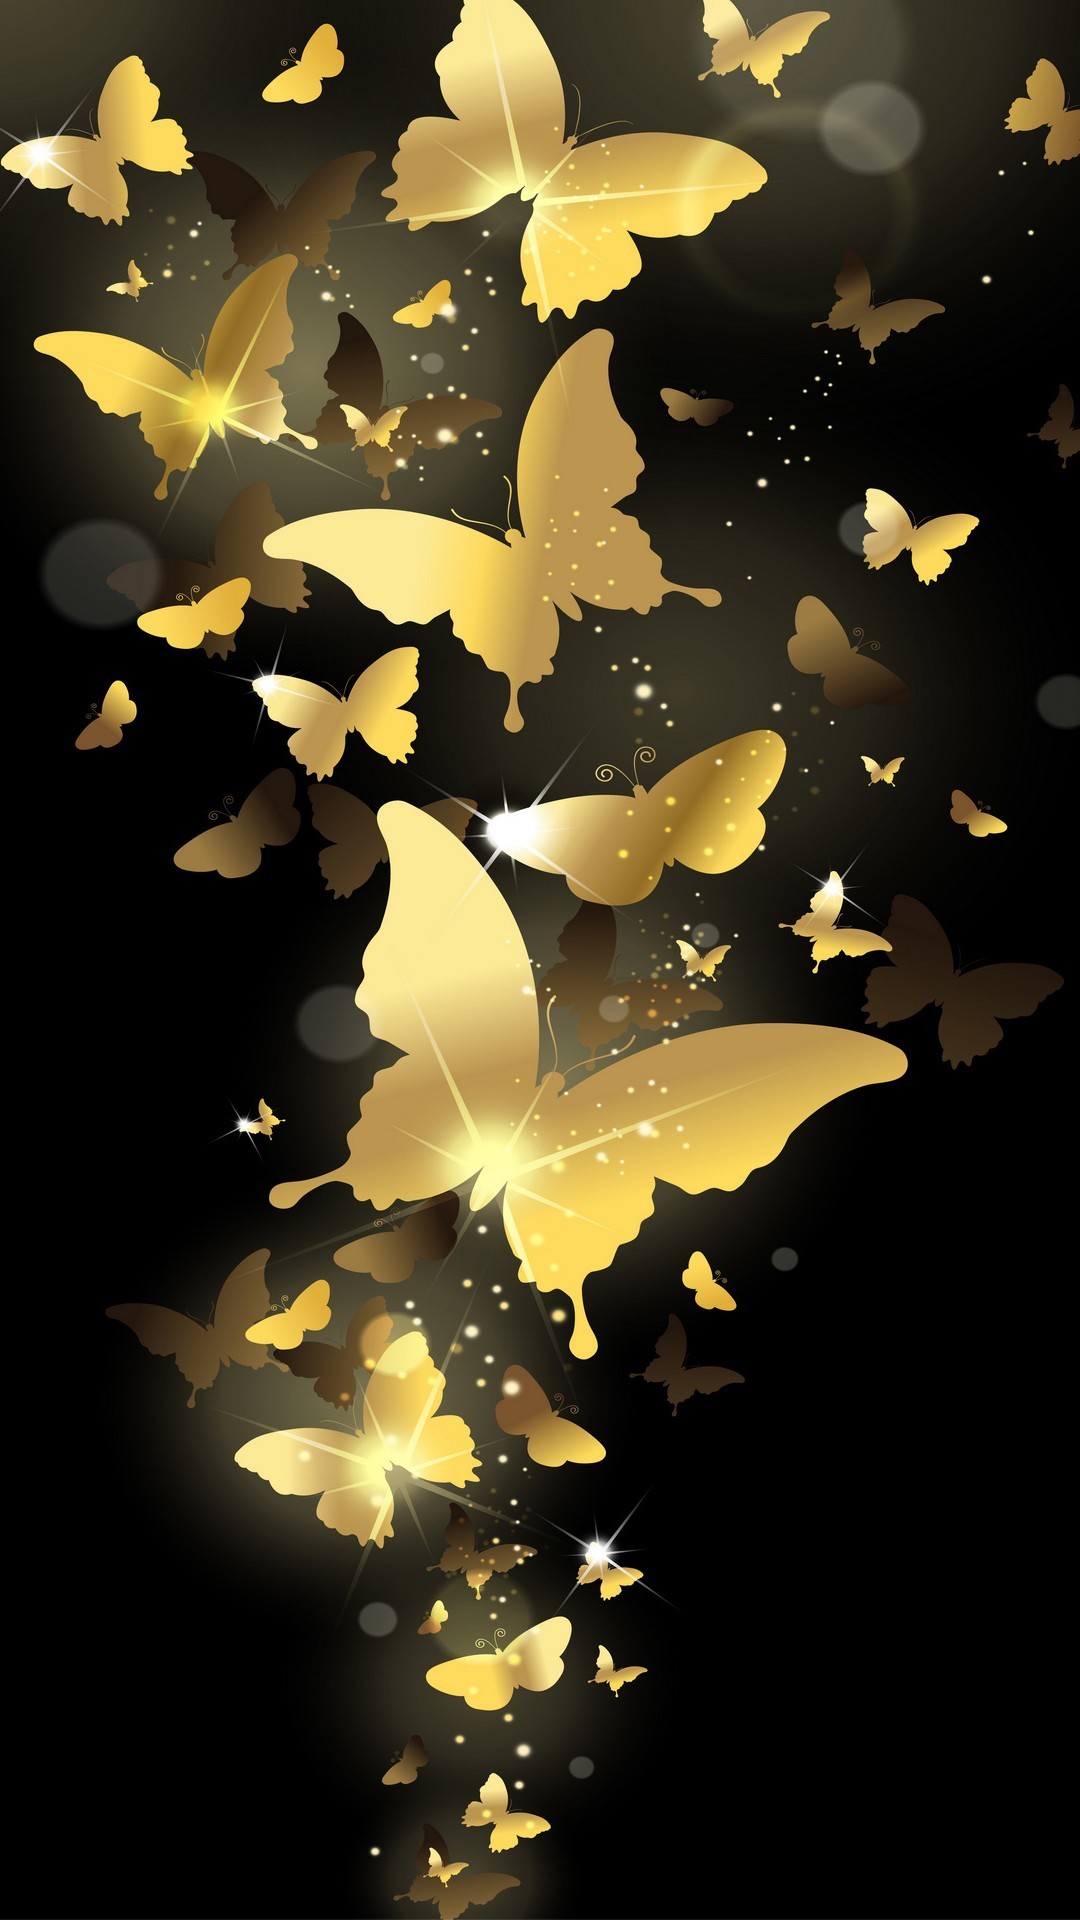 Flying Golden Butterflies Lockscreen iPhone 6 Plus HD Wallpaper